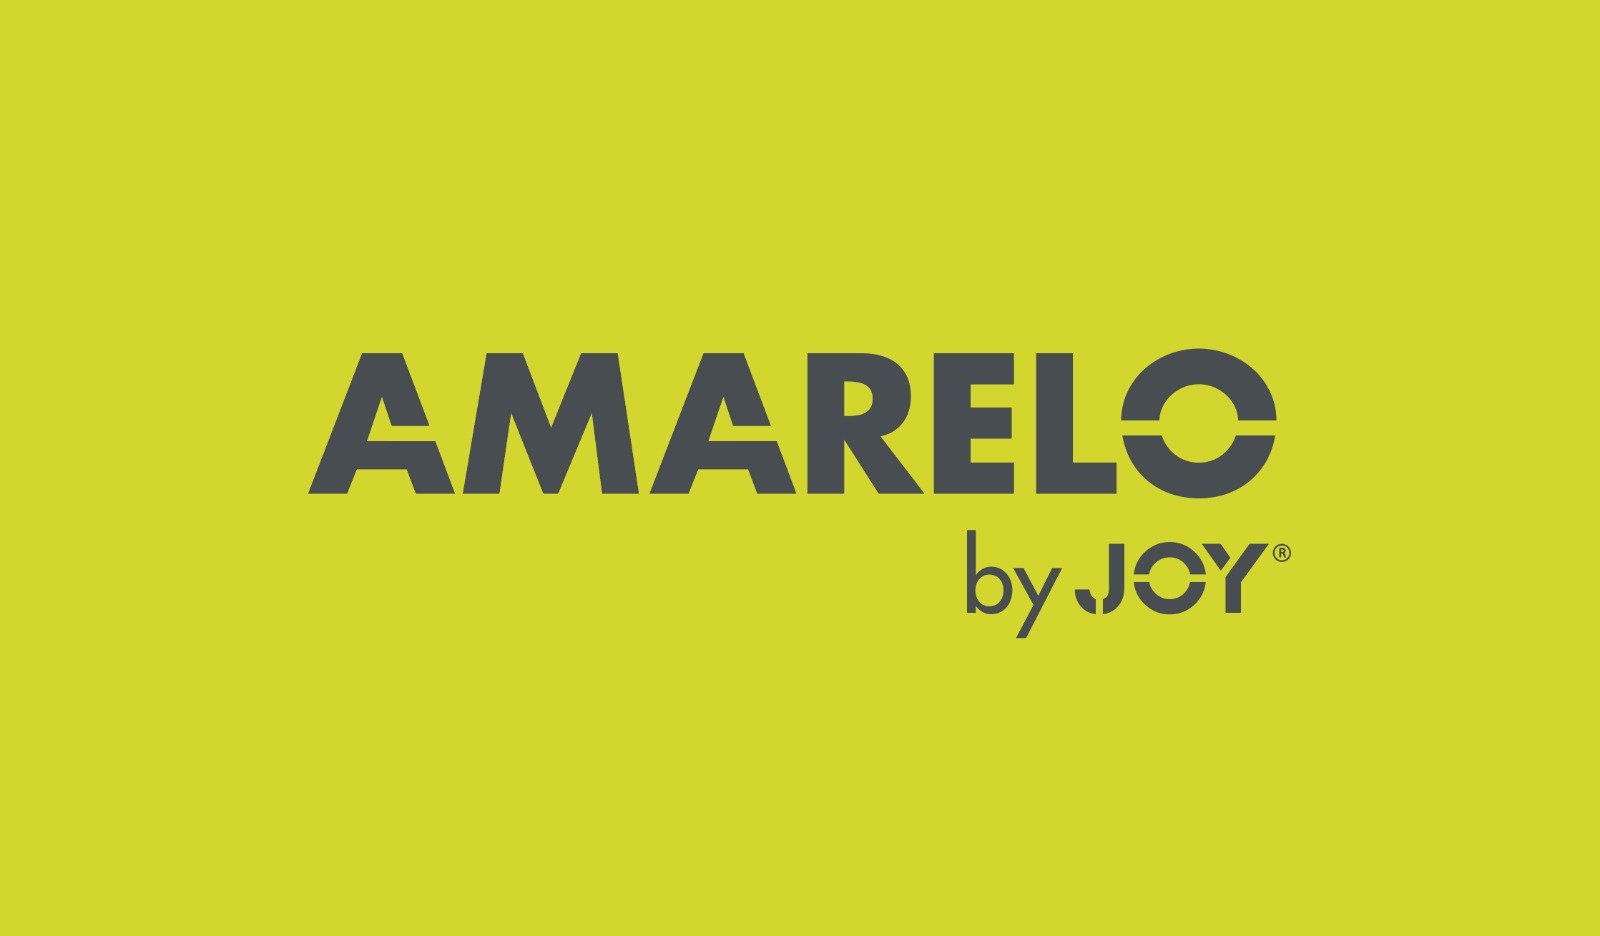 AMARELO by JOY